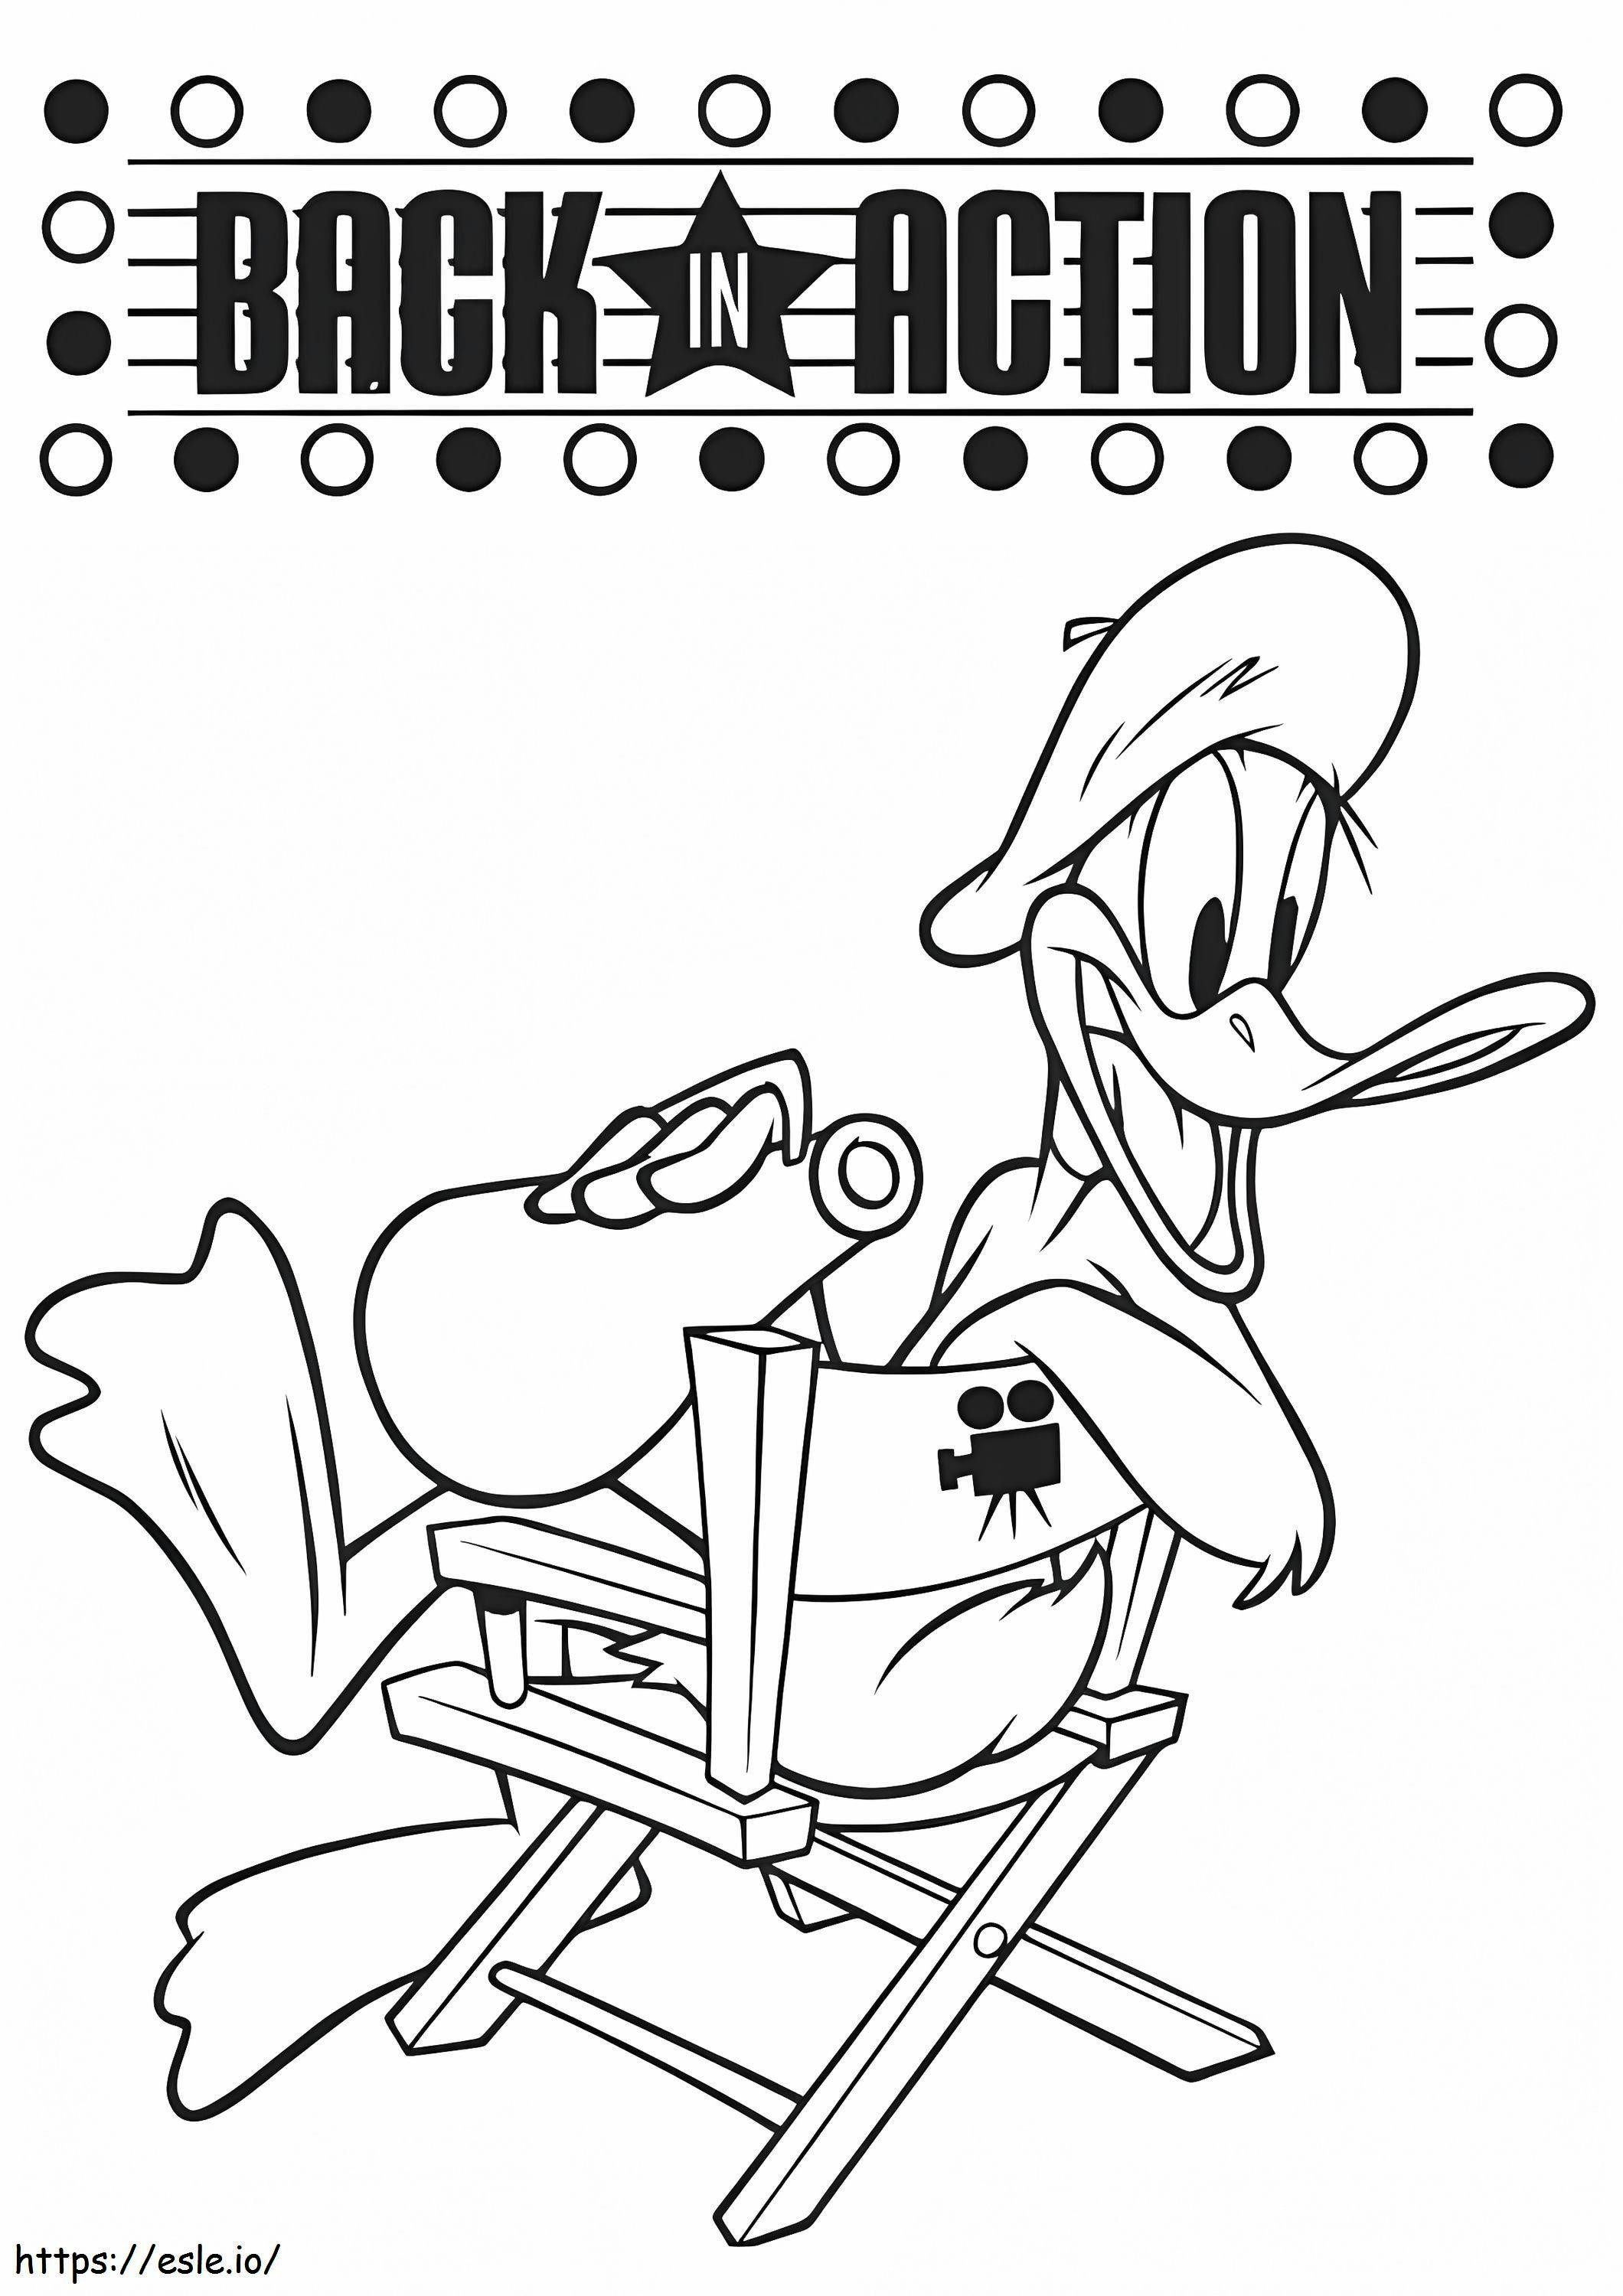 De terugkeer van Daffy Duck kleurplaat kleurplaat